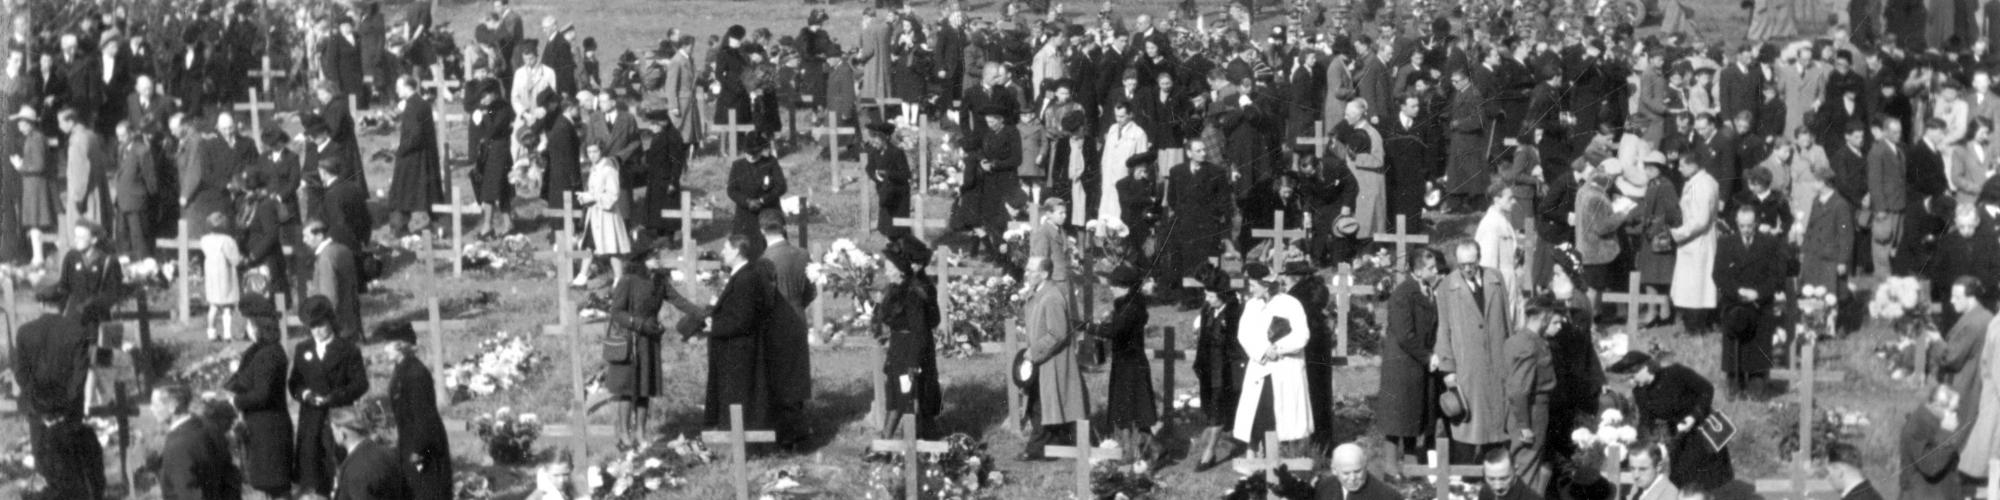  lettres d'adieu des résistants de Belgique exécutés en 1940-1944